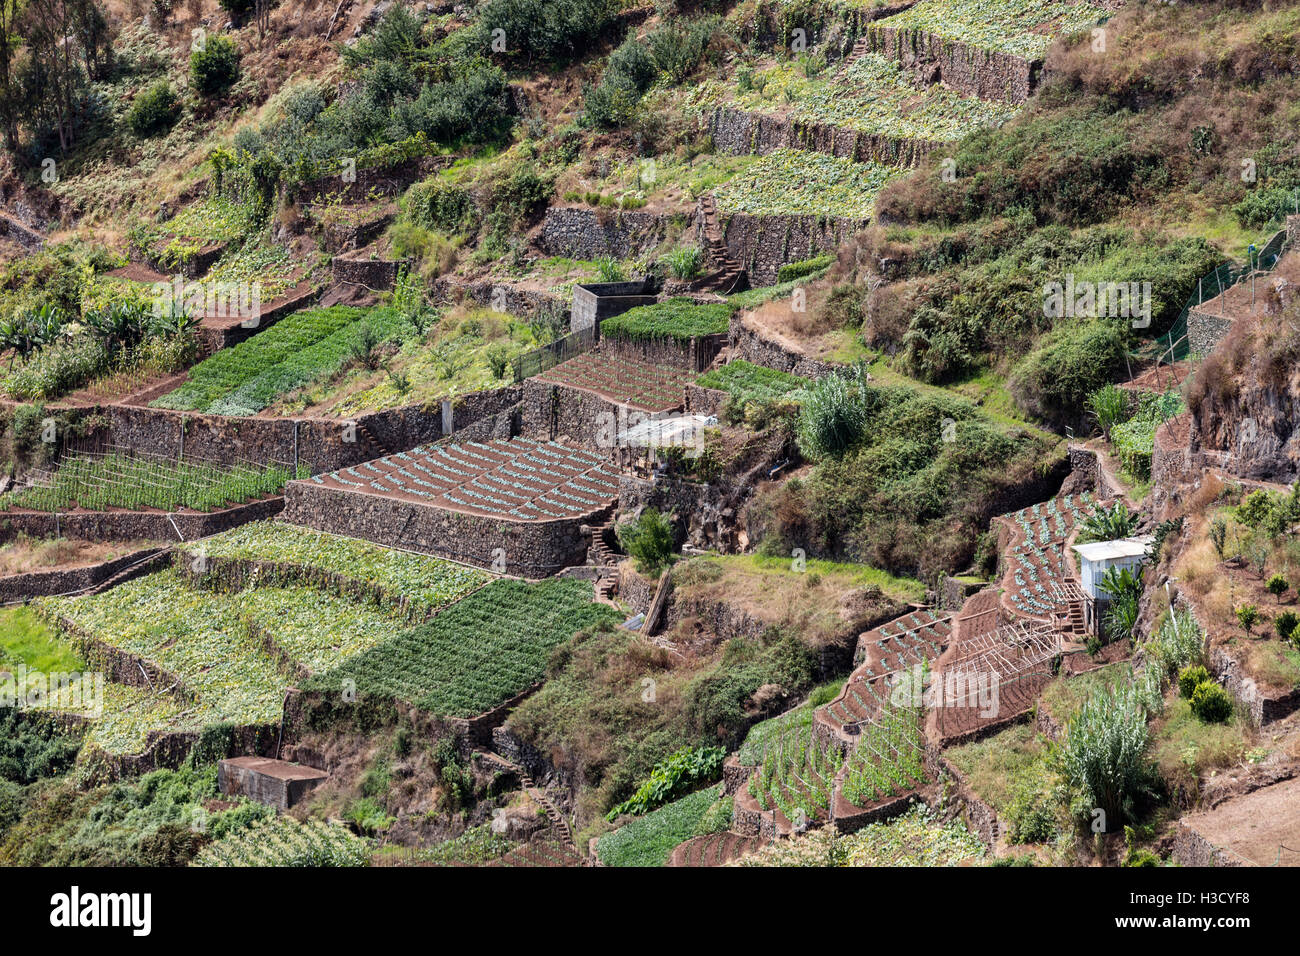 Landwirtschaft und Landschaften auf der Insel Madeira. Blick auf die terrassenförmig angelegten und gepflegten land Stockfoto